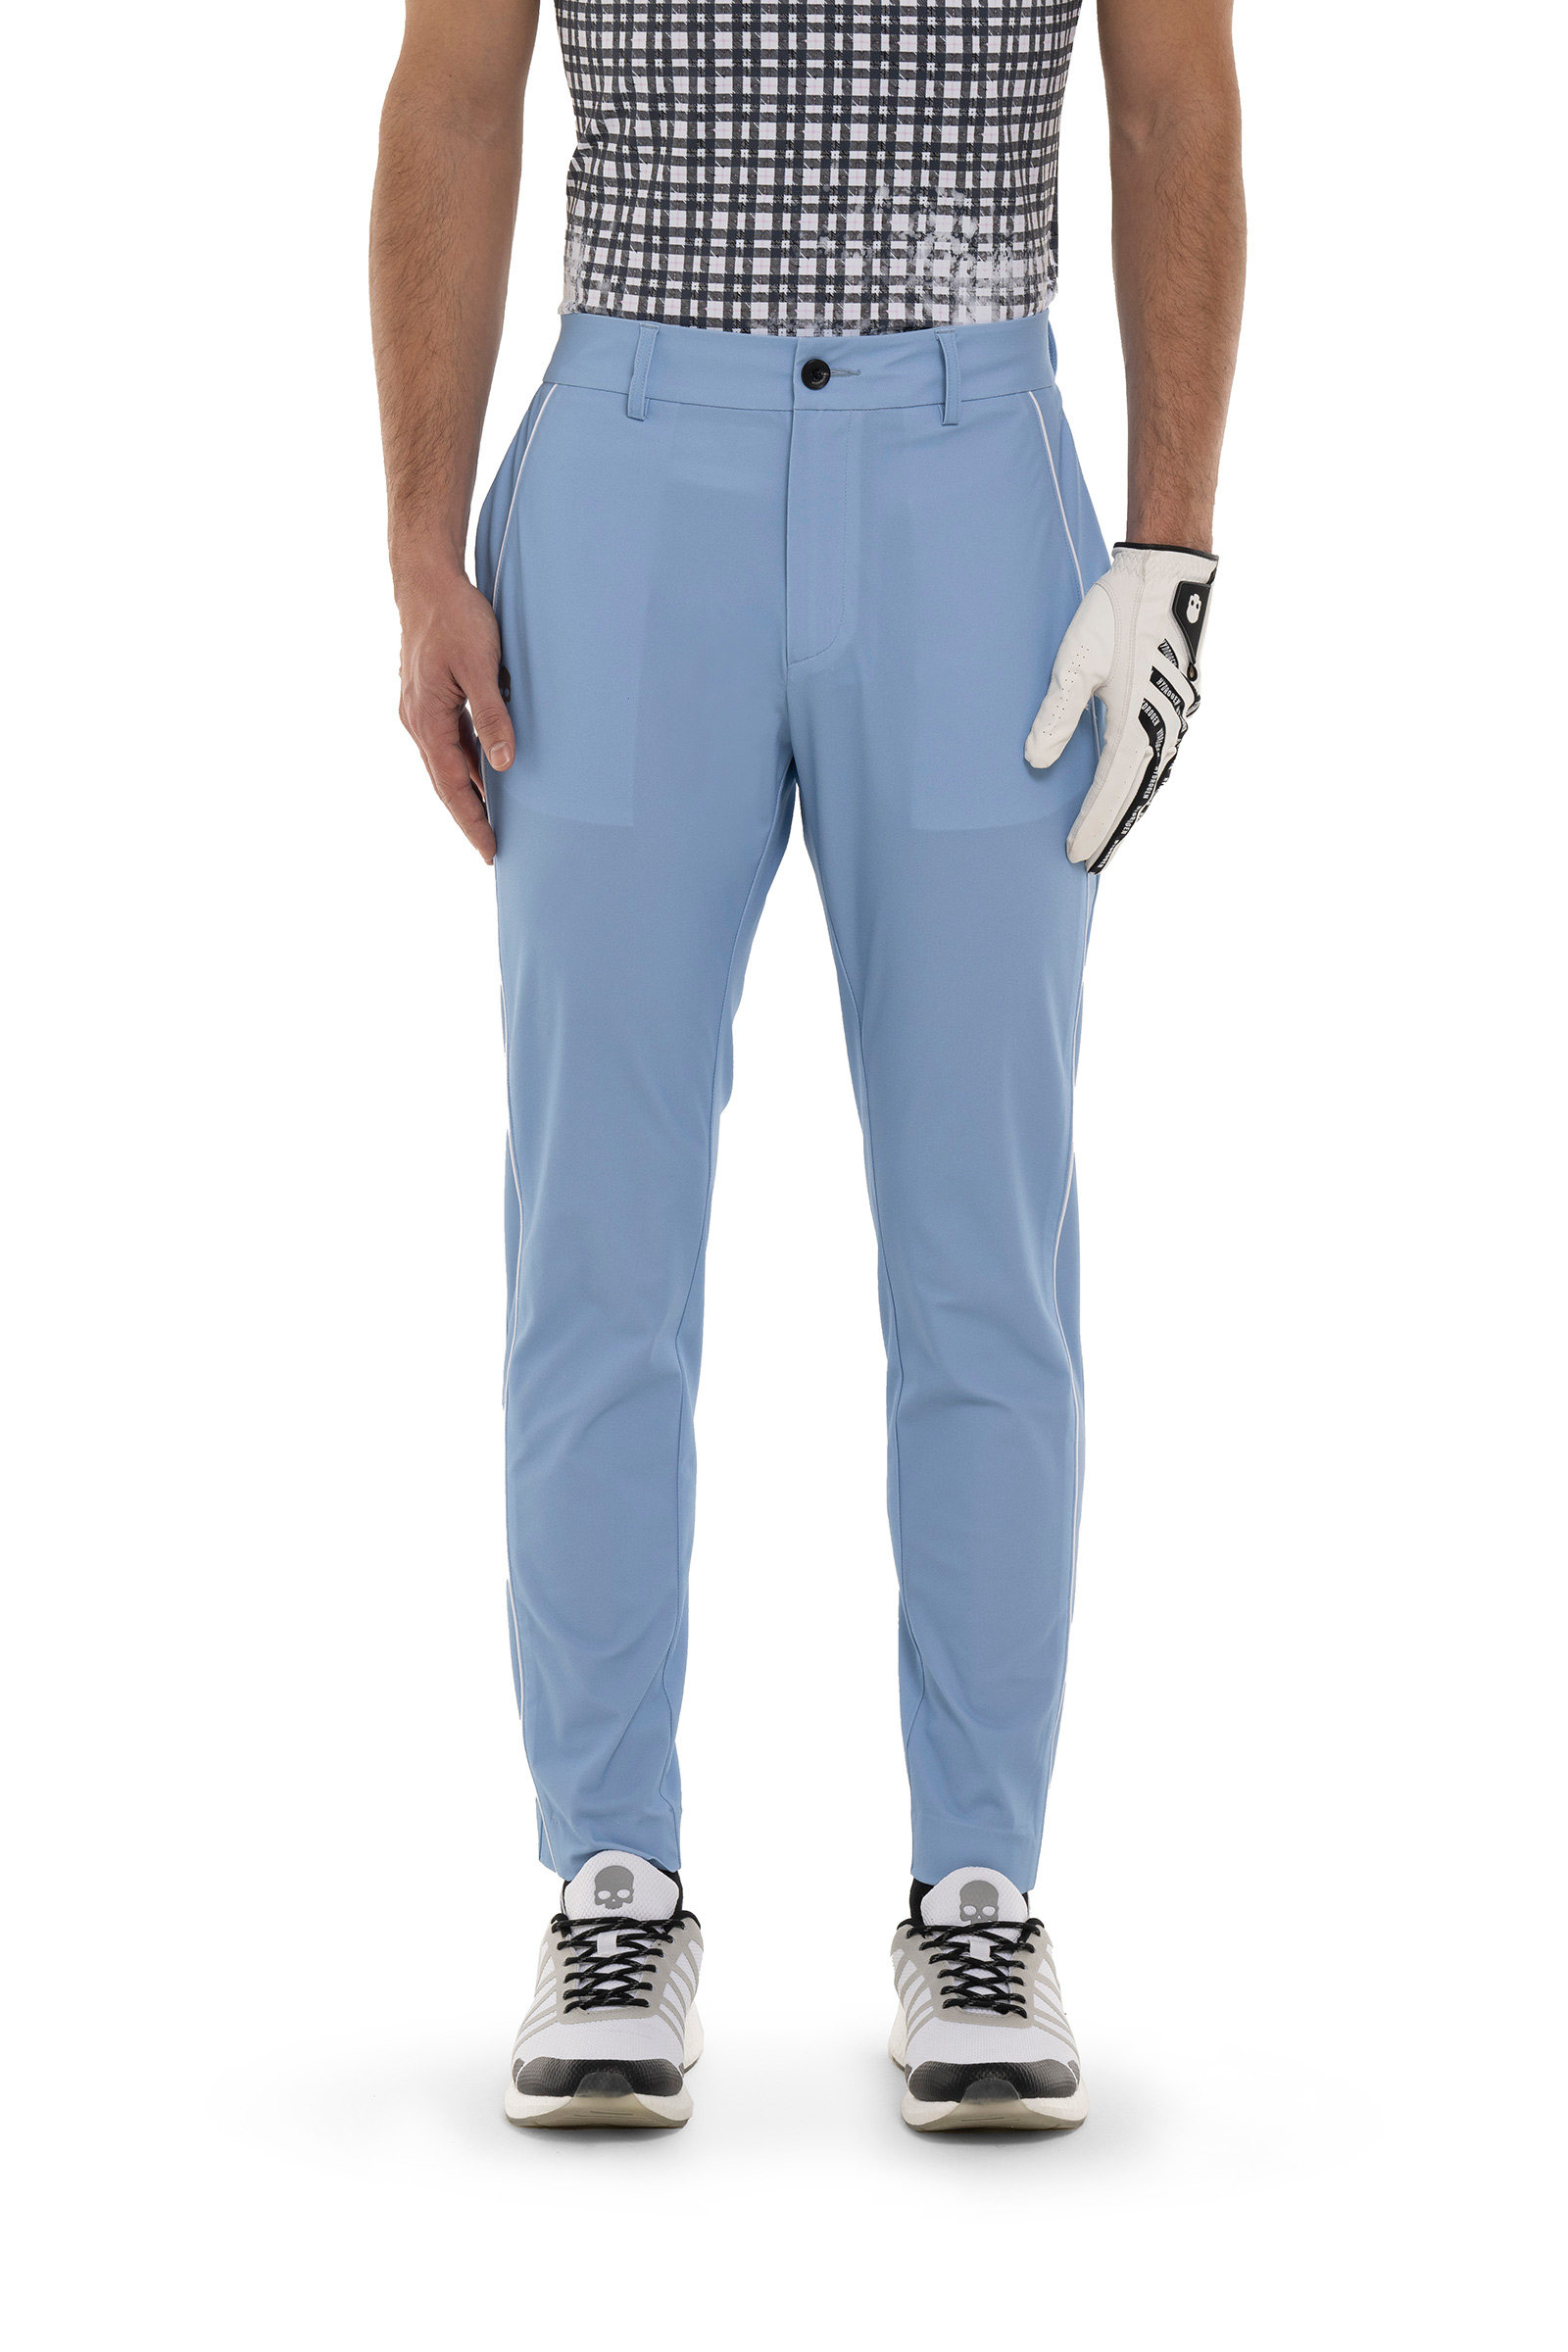 PIPING TECH PANTS - Apparel - Hydrogen - Luxury Sportwear